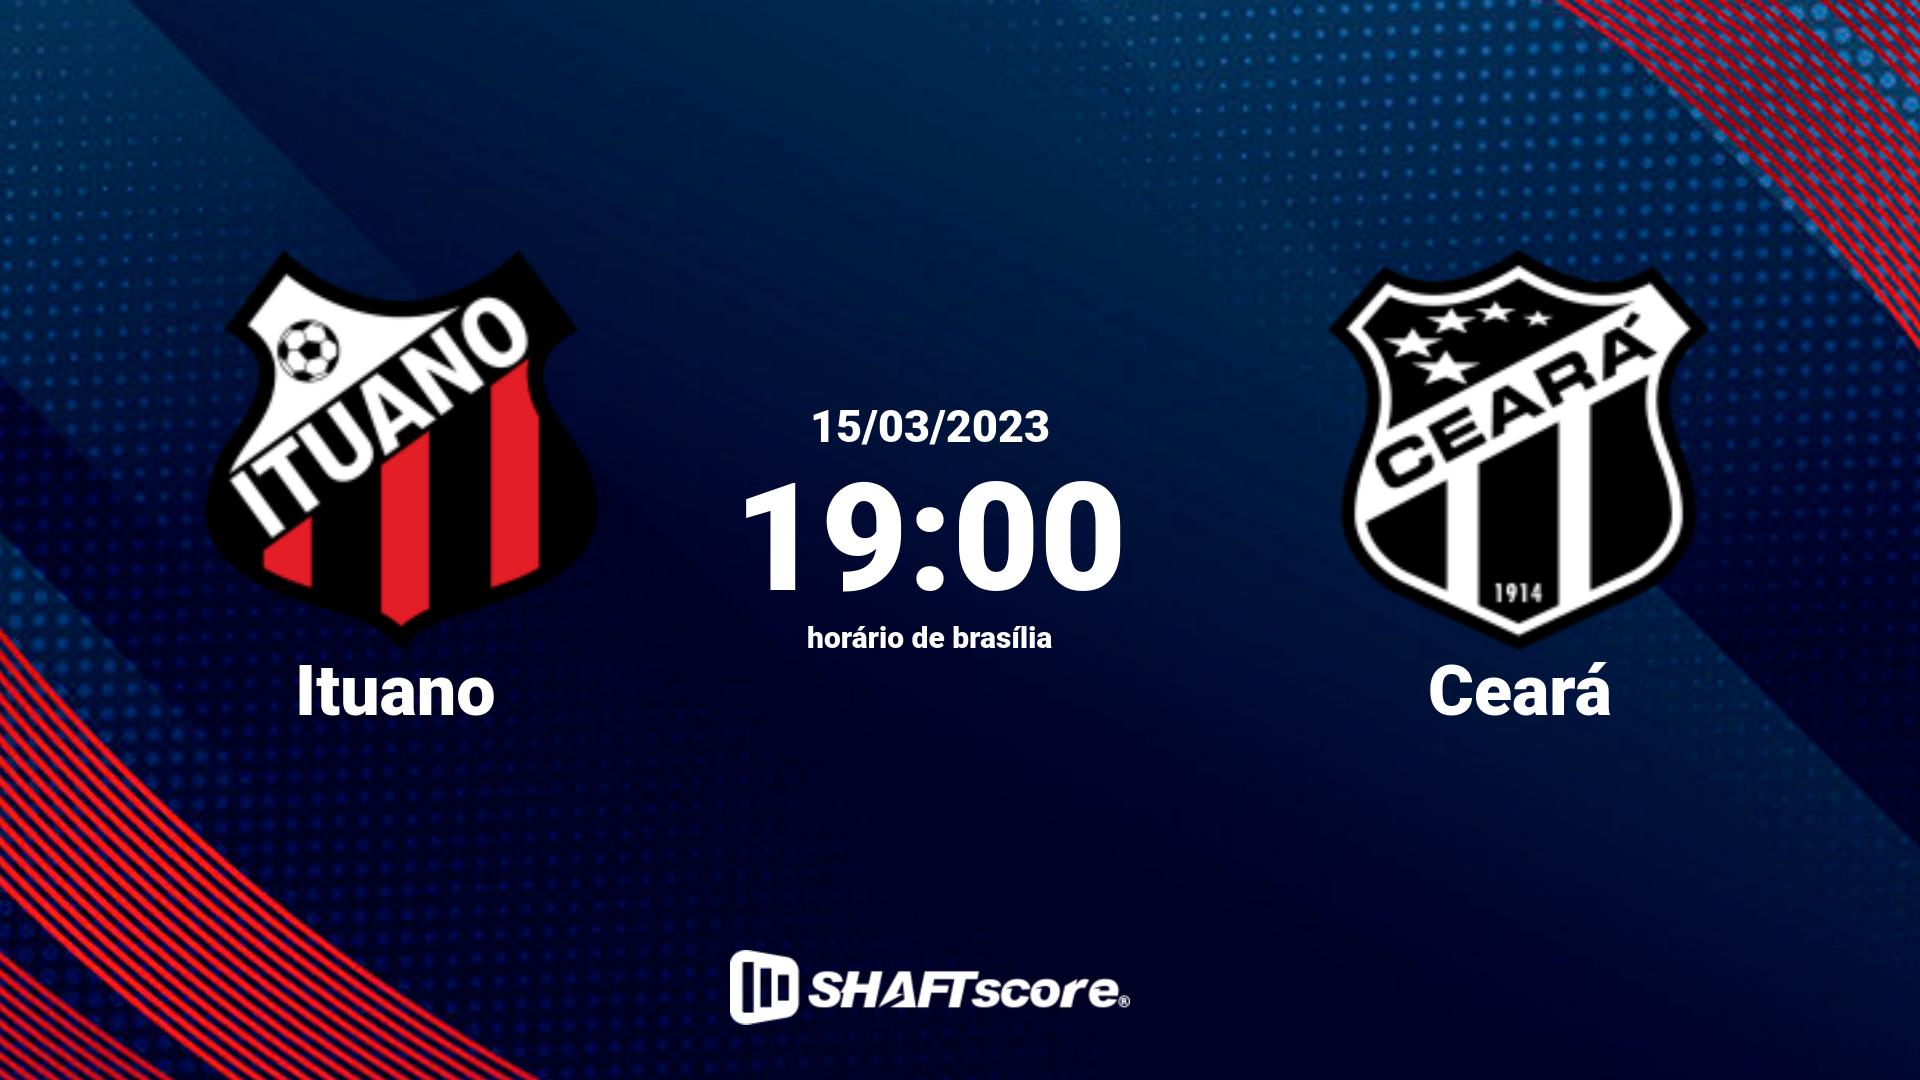 Estatísticas do jogo Ituano vs Ceará 15.03 19:00